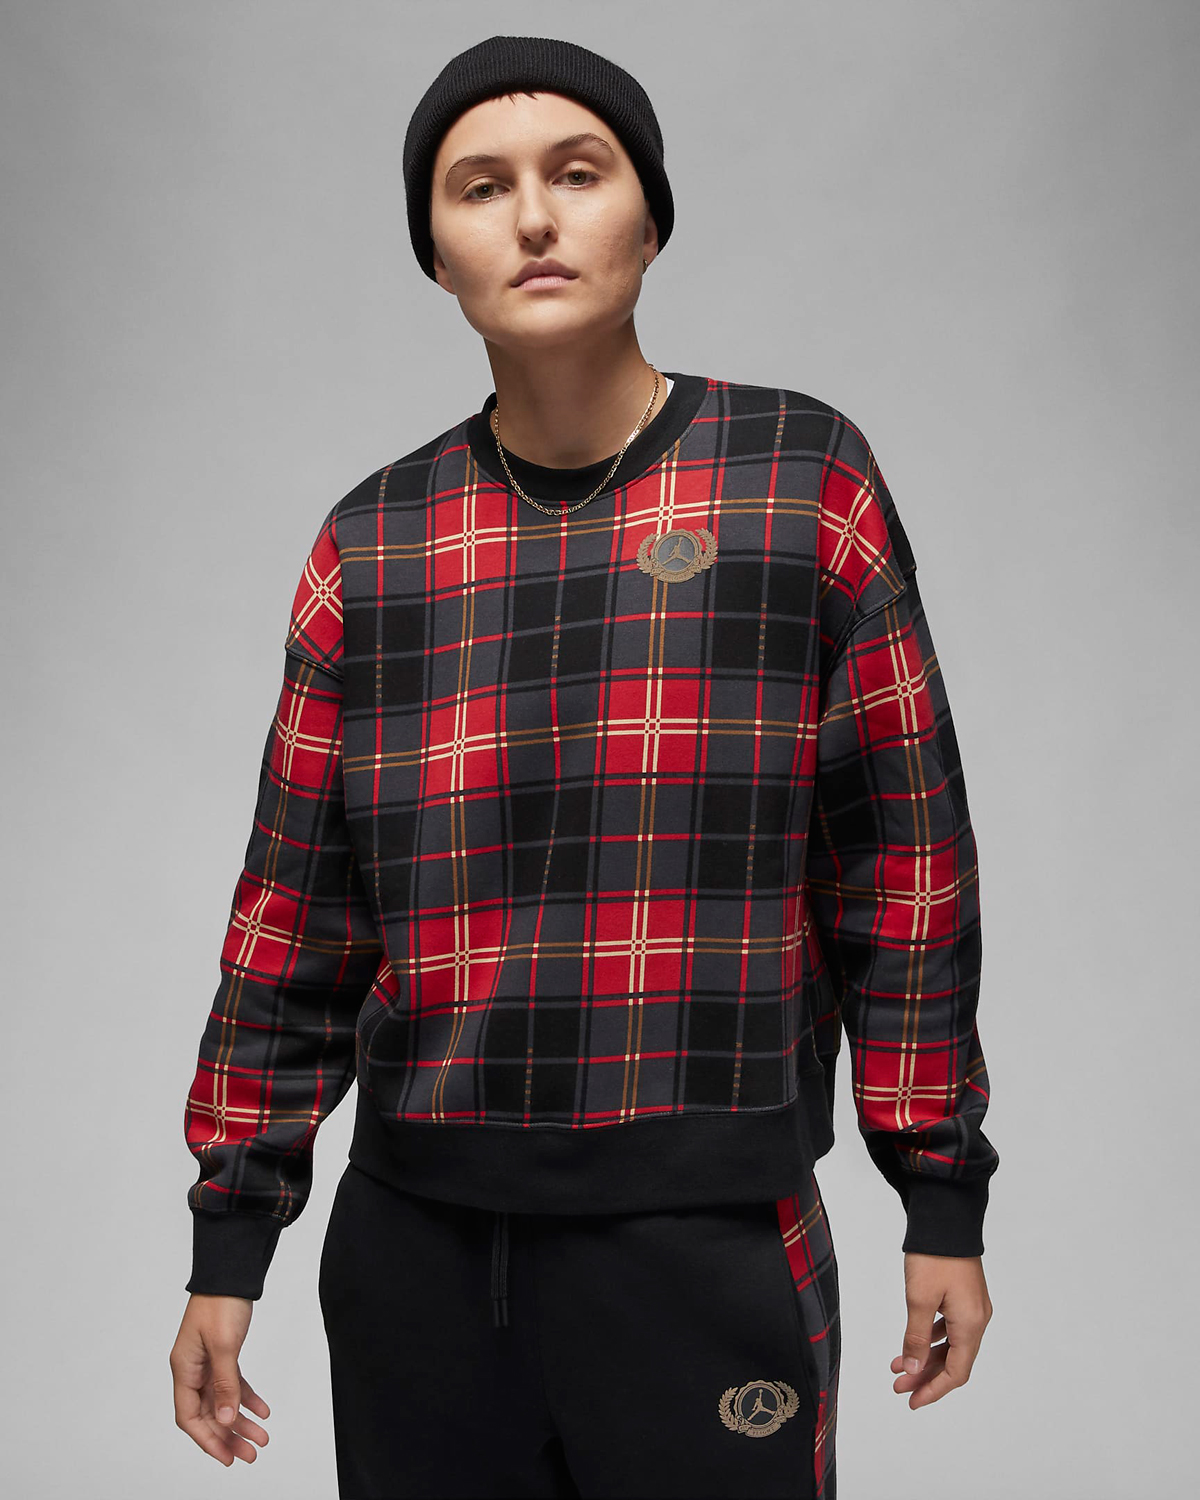 Jordan-Brooklyn-Womens-Holiday-Crew-Sweatshirt